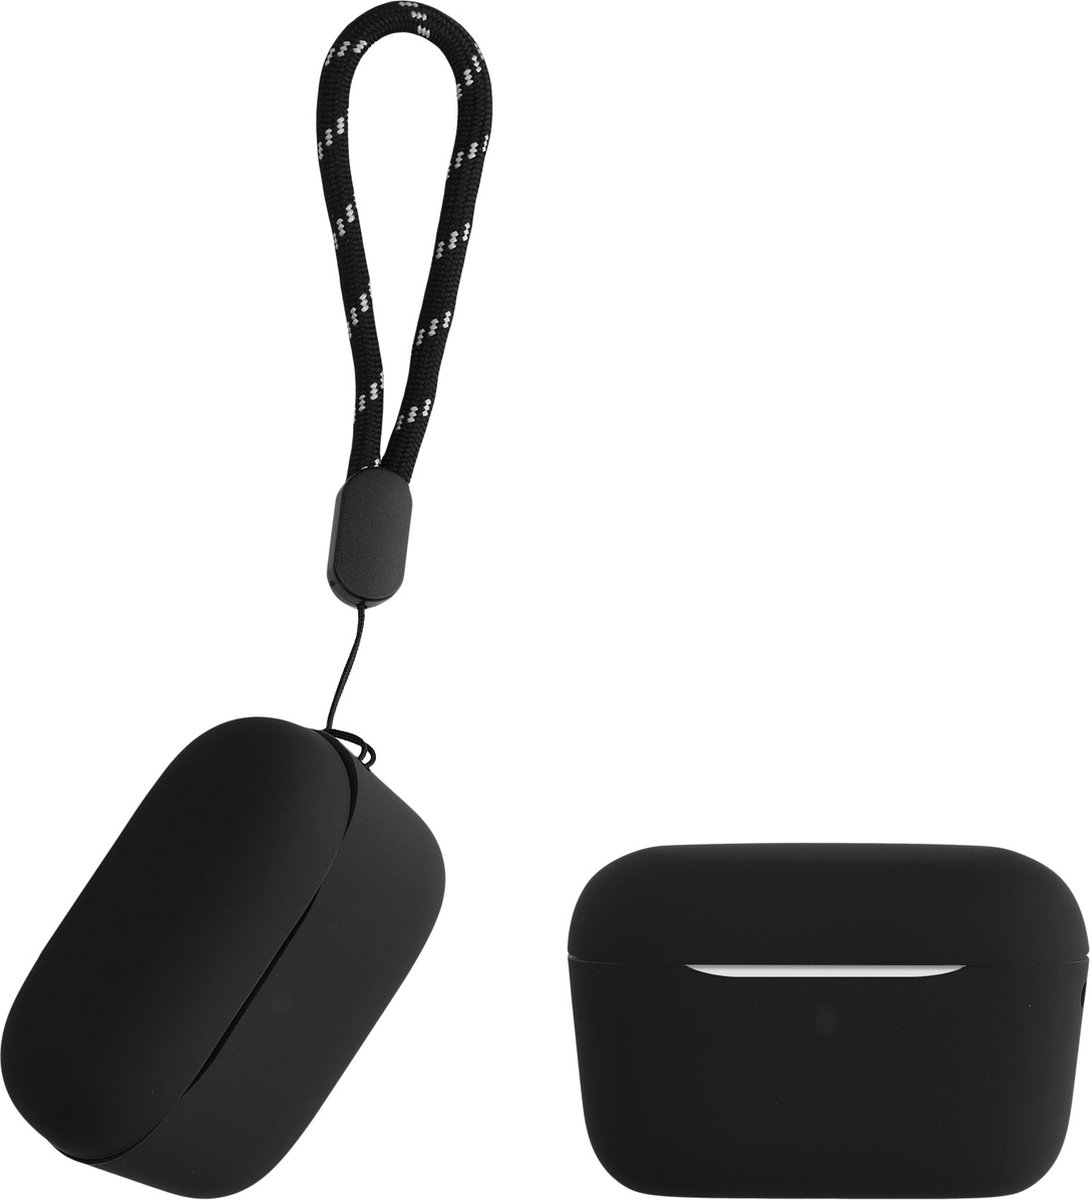 kwmobile Hoes geschikt voor Anker Soundcore A20i - Siliconen cover voor oordopjes in zwart